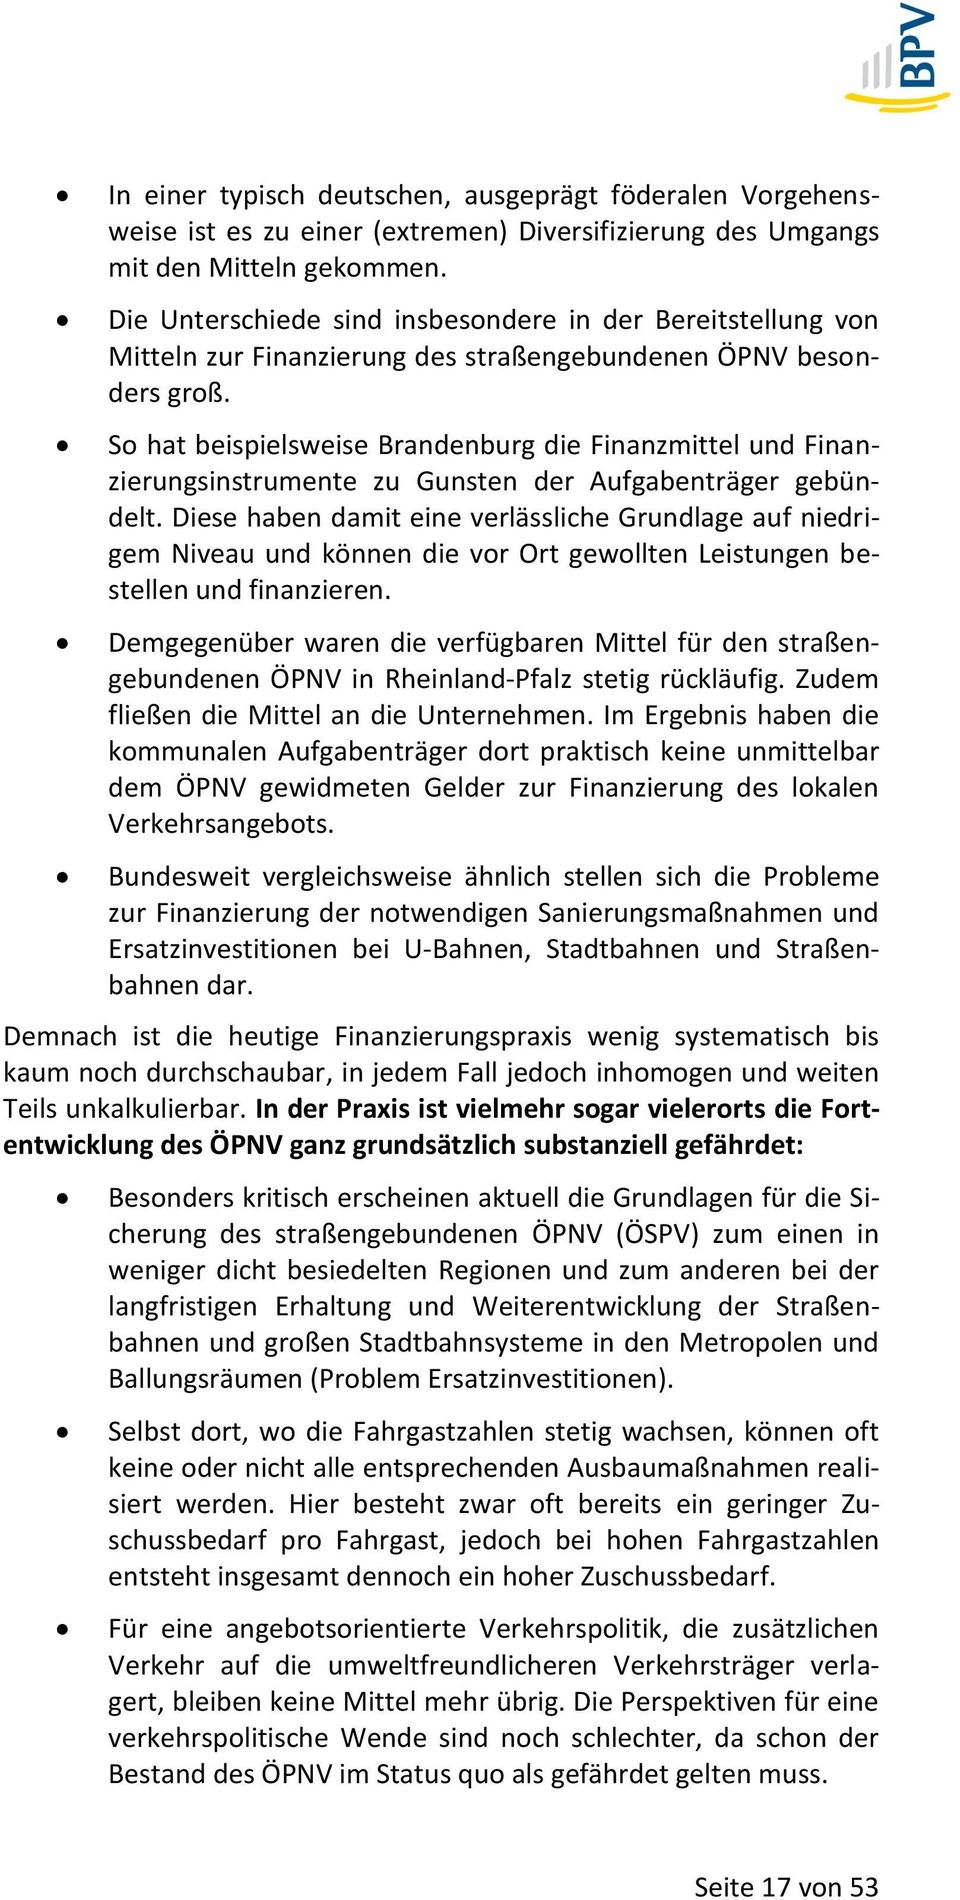 So hat beispielsweise Brandenburg die Finanzmittel und Finanzierungsinstrumente zu Gunsten der Aufgabenträger gebündelt.